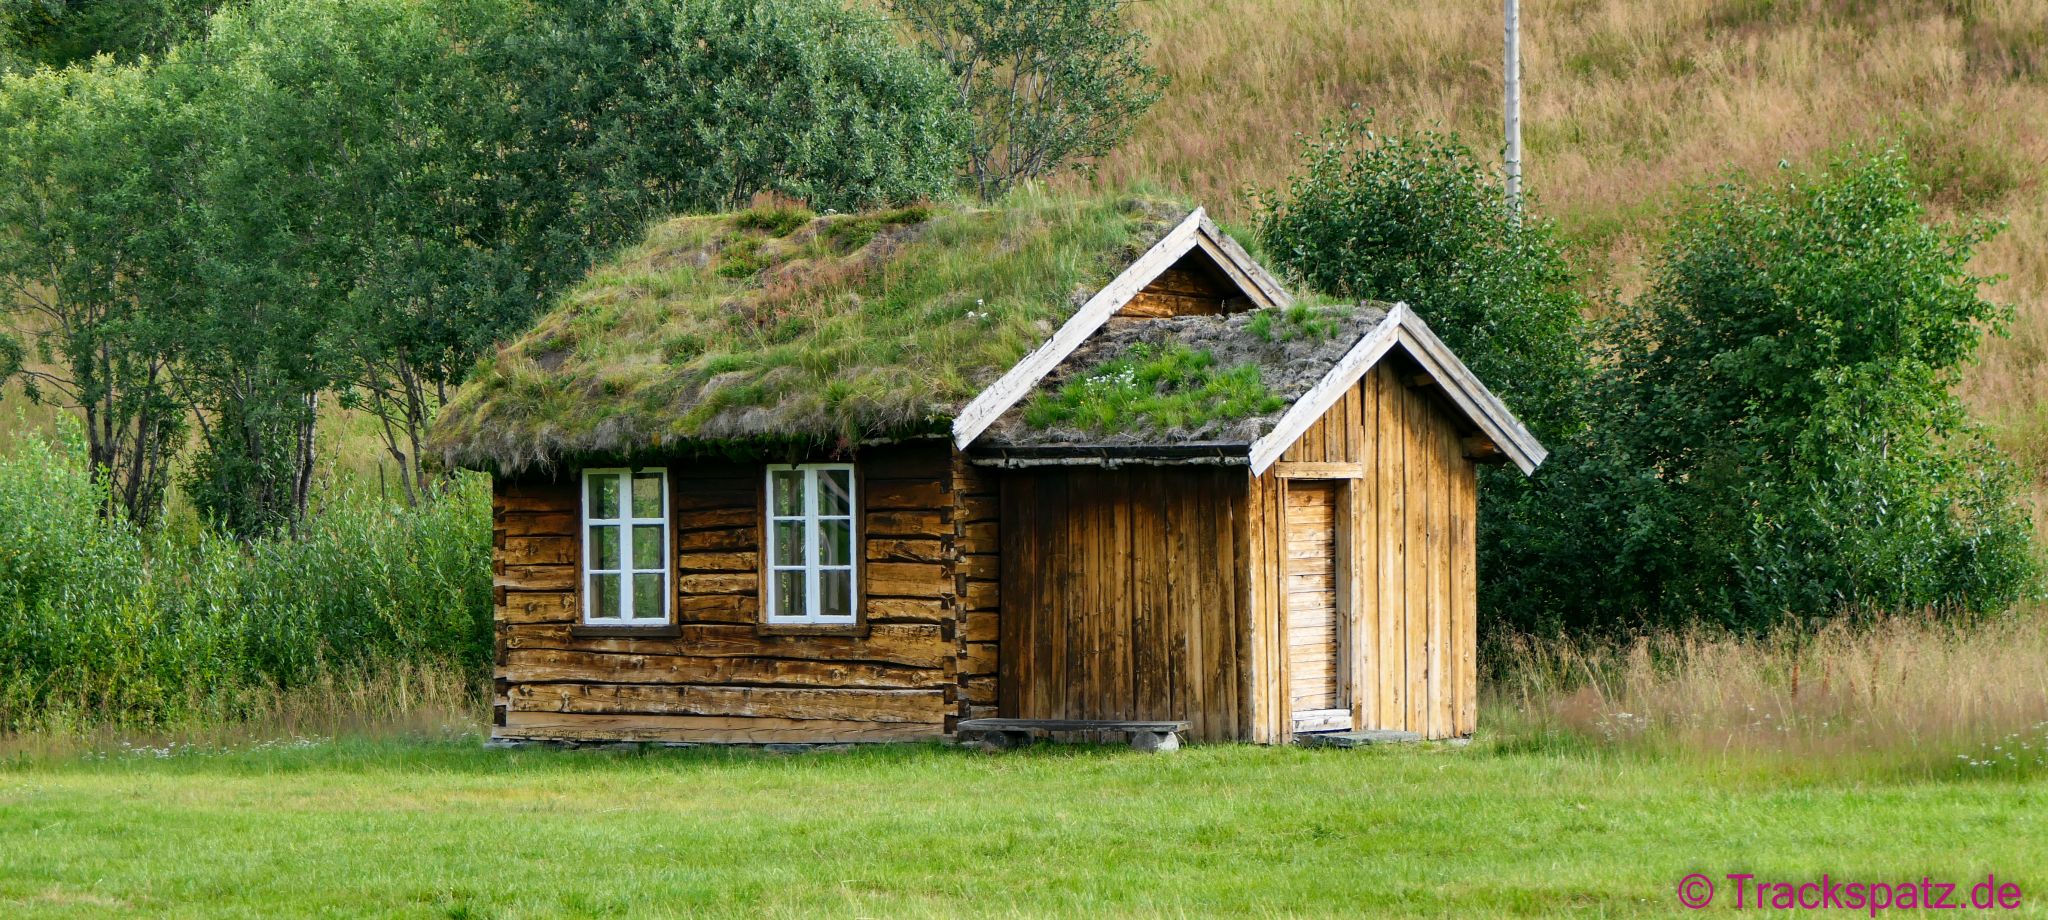  Hütten und Häuser mit Grasdächern gibt es nicht nur in der Antike, sondern sind brandaktuell